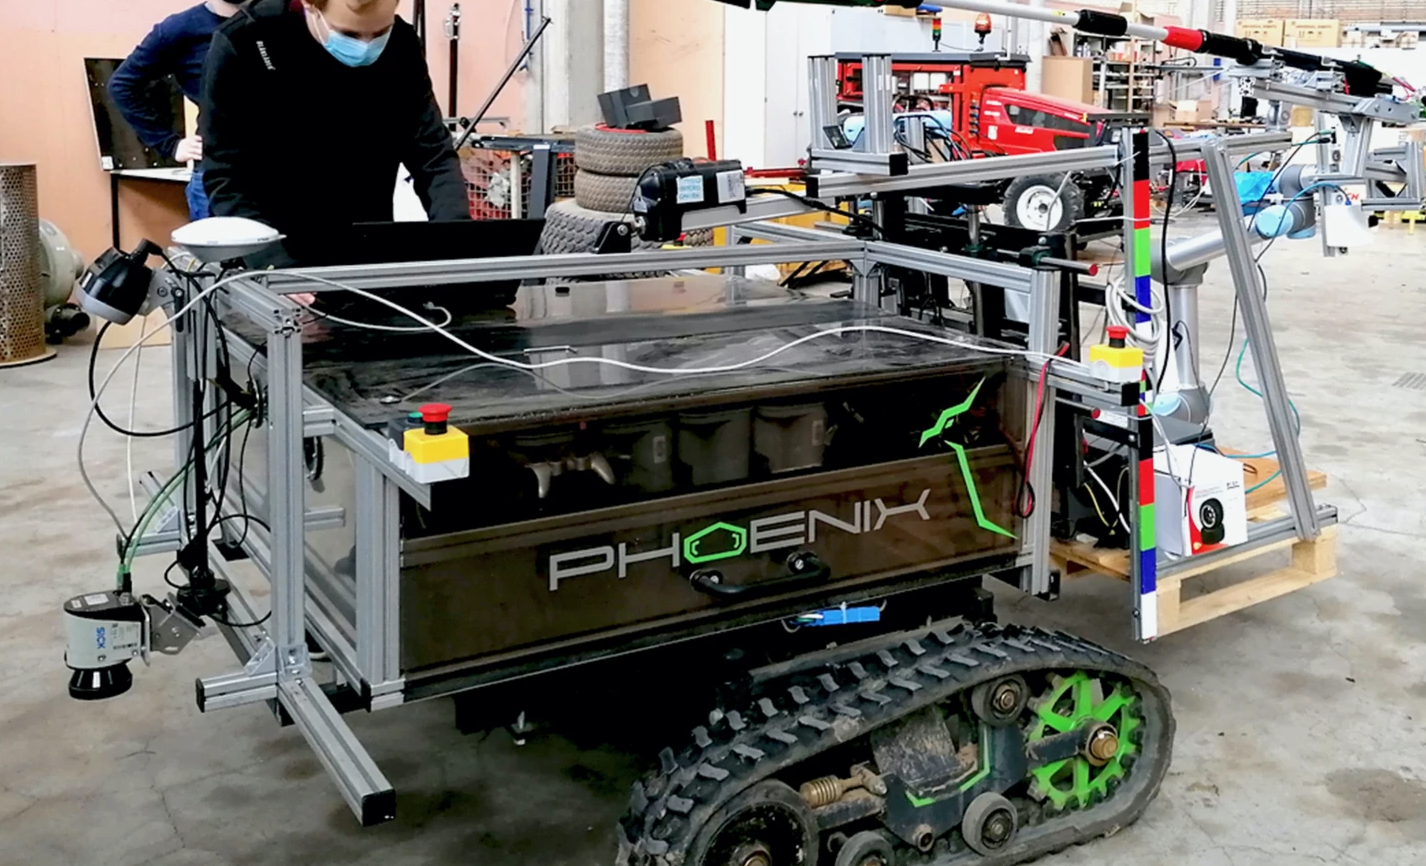 Представлен немецкий робот Phoenix предназначенный для обрезки фруктовых деревьев